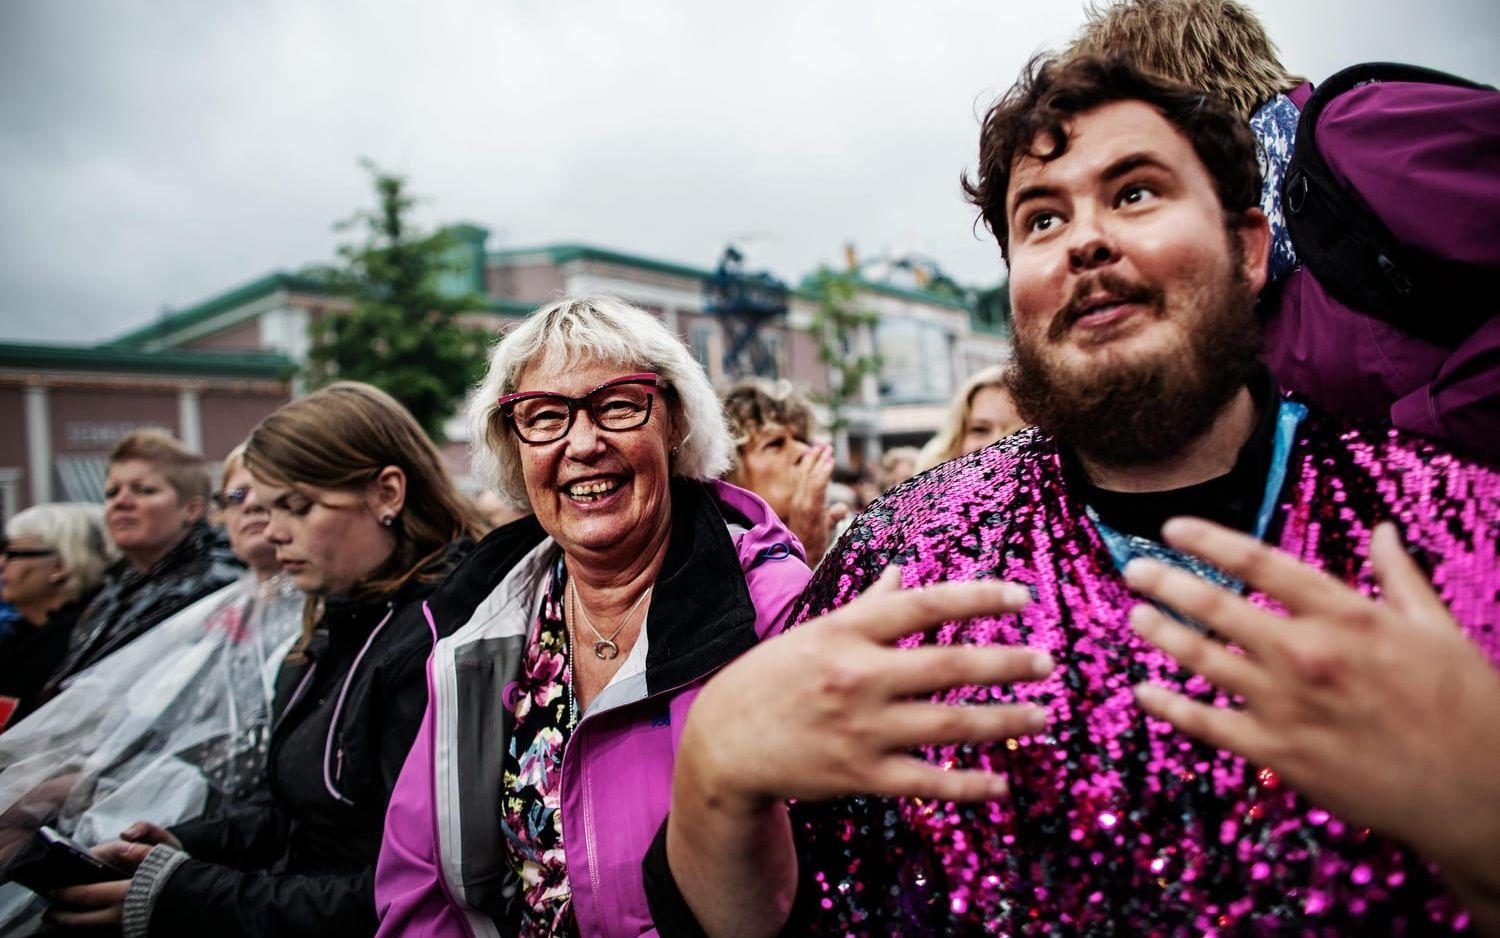 Glada fans i publikhavet. Foto: Petter Trens.